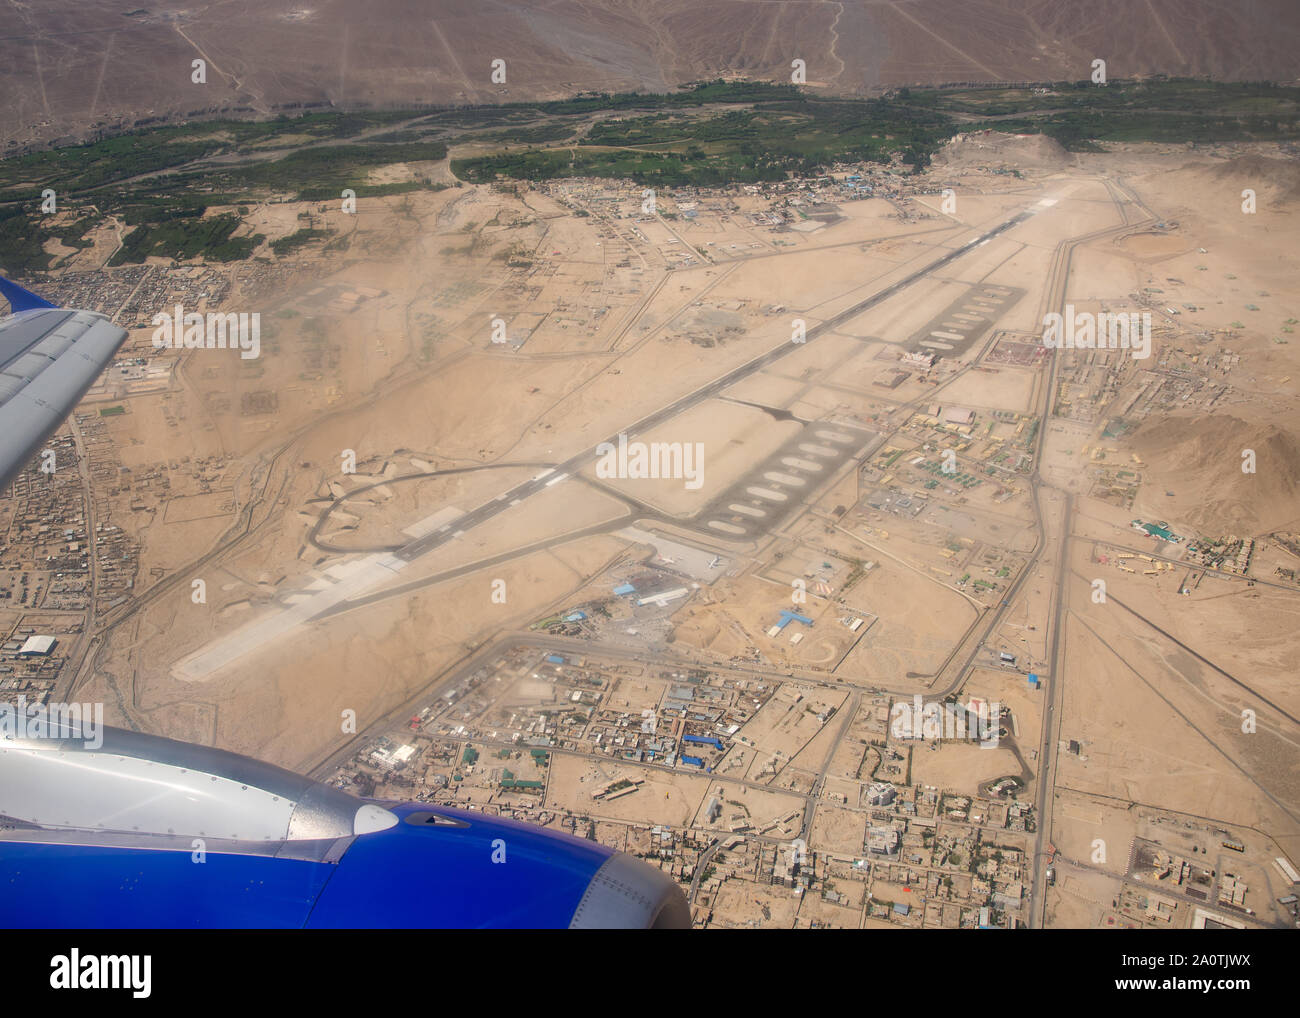 Vista aerea al paesaggio e aeroporto da Leh, Ladakh, India Foto Stock